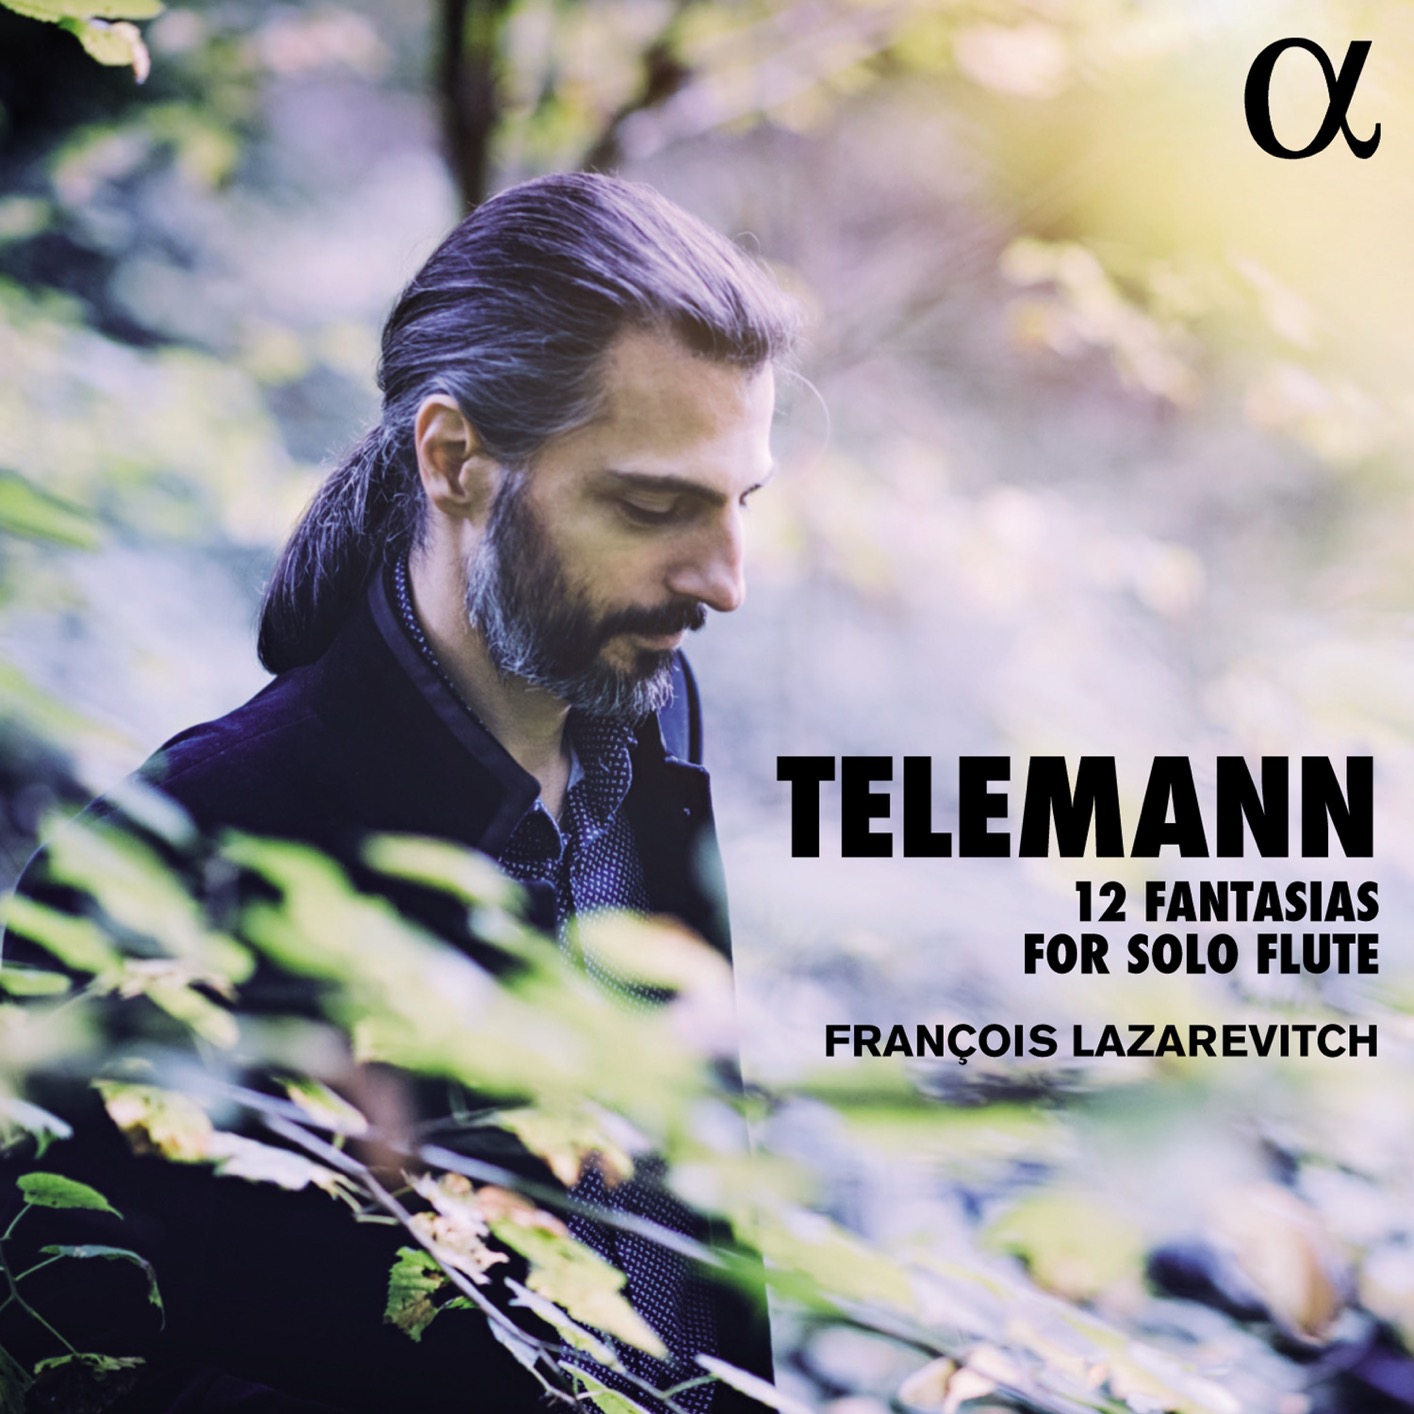 Francois Lazarevitch - Telemann: 12 Fantasias for Solo Flute (2017) [Qobuz FLAC 24bit/96kHz]